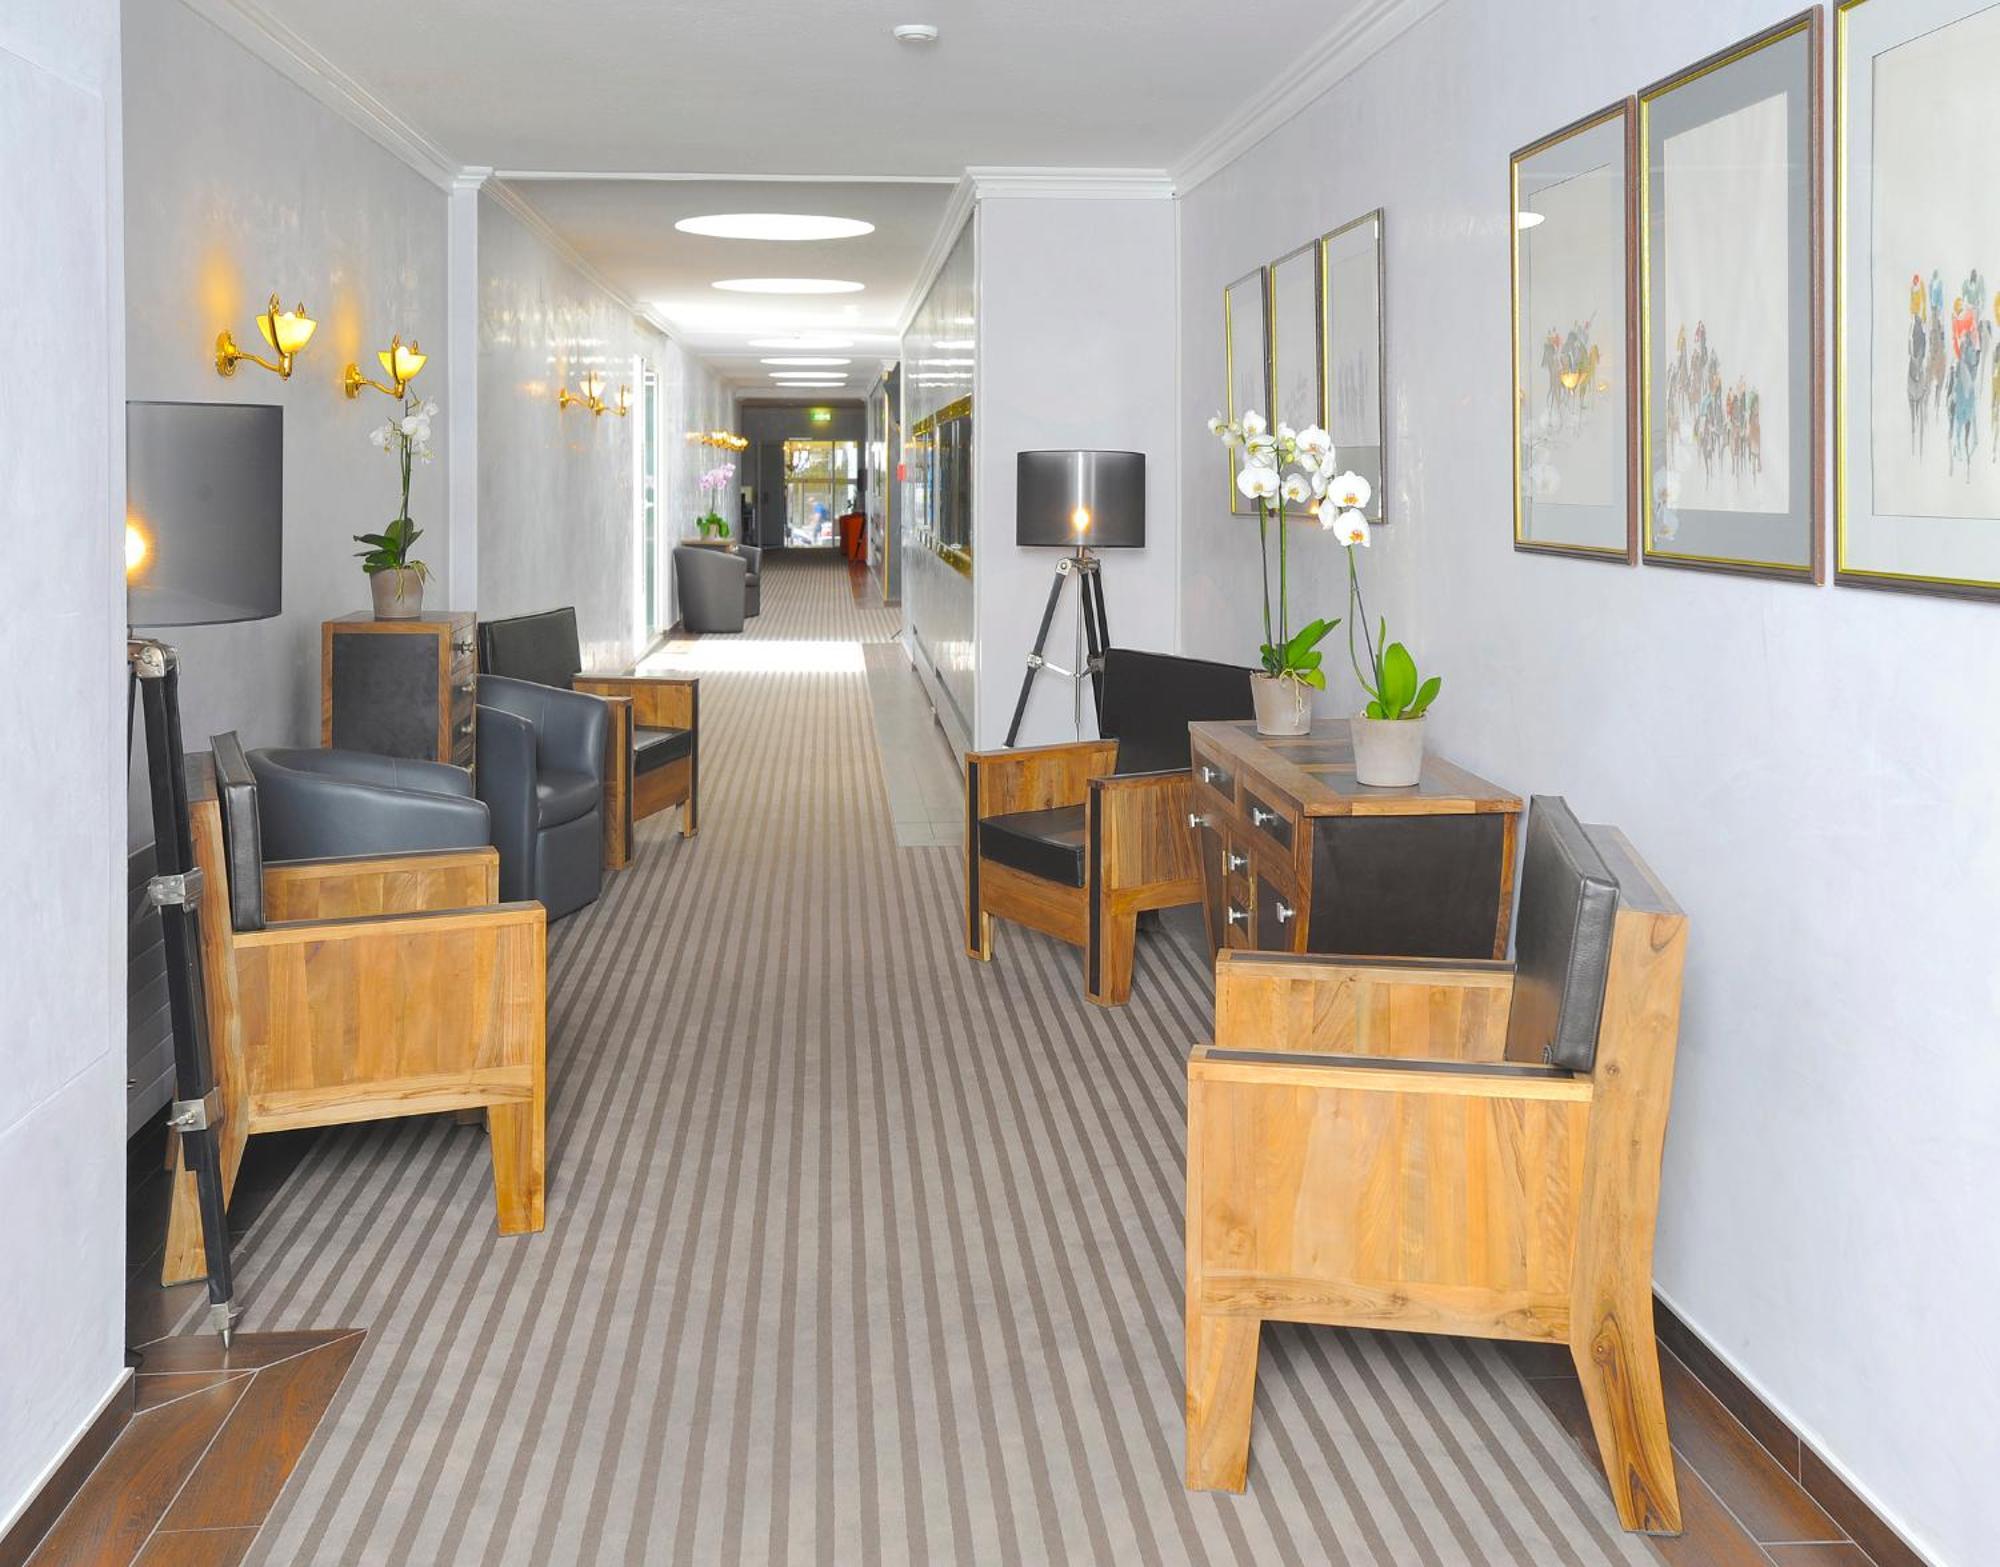 Hotel Drake Longchamp Genewa Zewnętrze zdjęcie